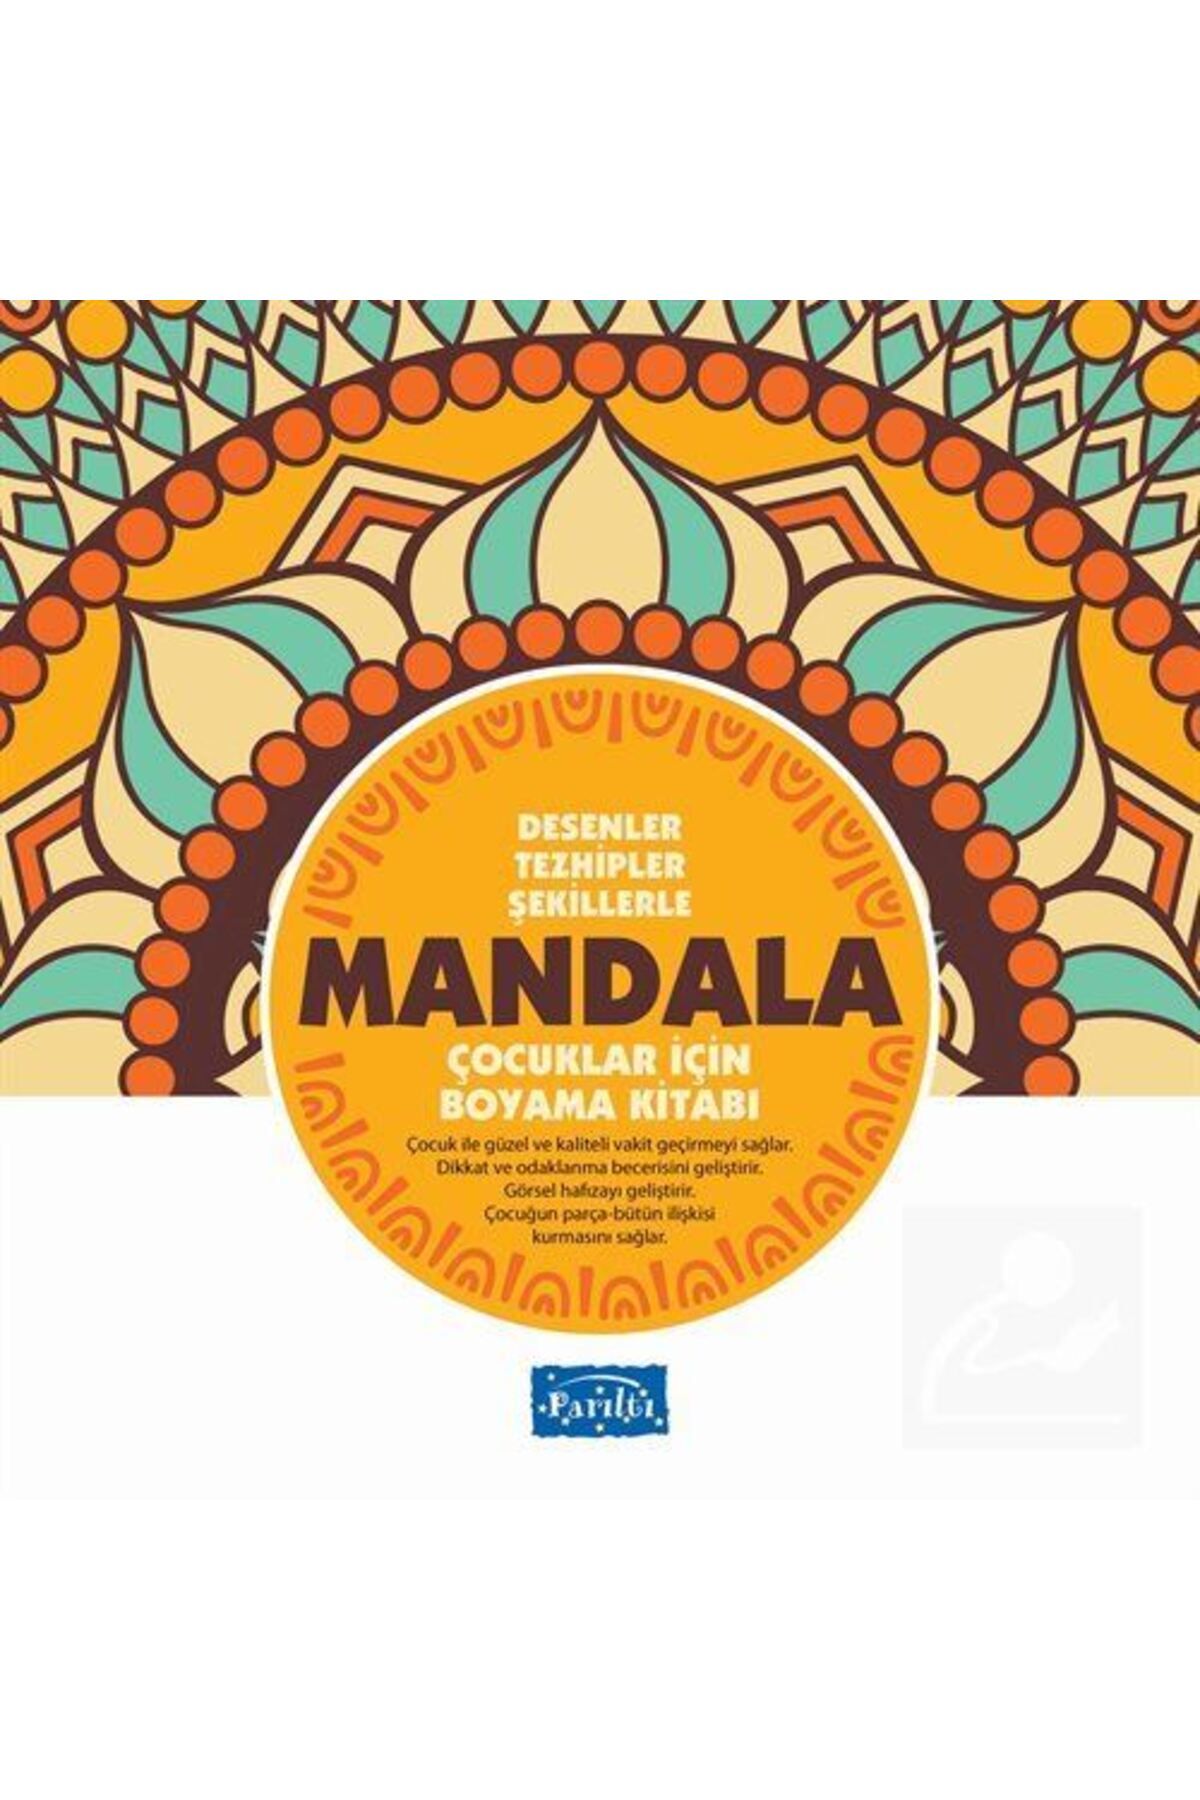 Parıltı Yayıncılık Desenler Tezhipler Şekillerle Mandala - Sarı Kitap - Çocuklar Için Boyama Kitabı